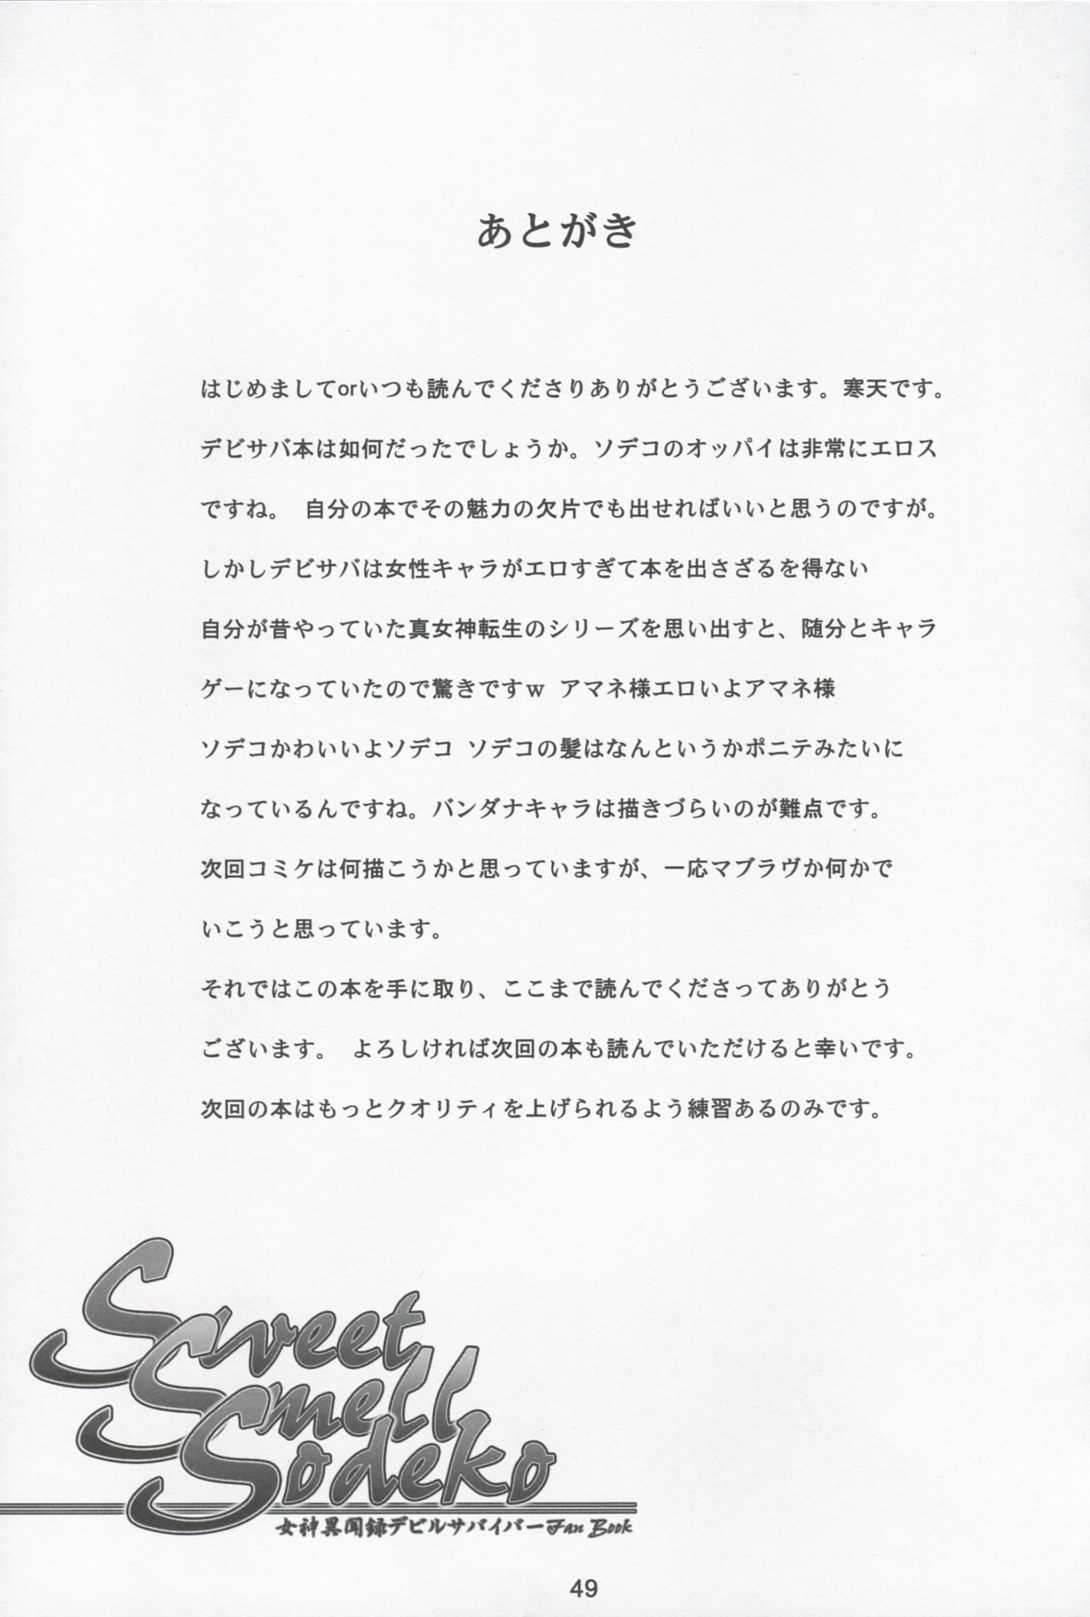 [Kanten Jigenryuu] Sweet Smell Sodeko (Shin Megami Tensei Devil Survivor) [寒天示現流] Sweet Smell Sodeko (女神異聞録デビルサバイバー)